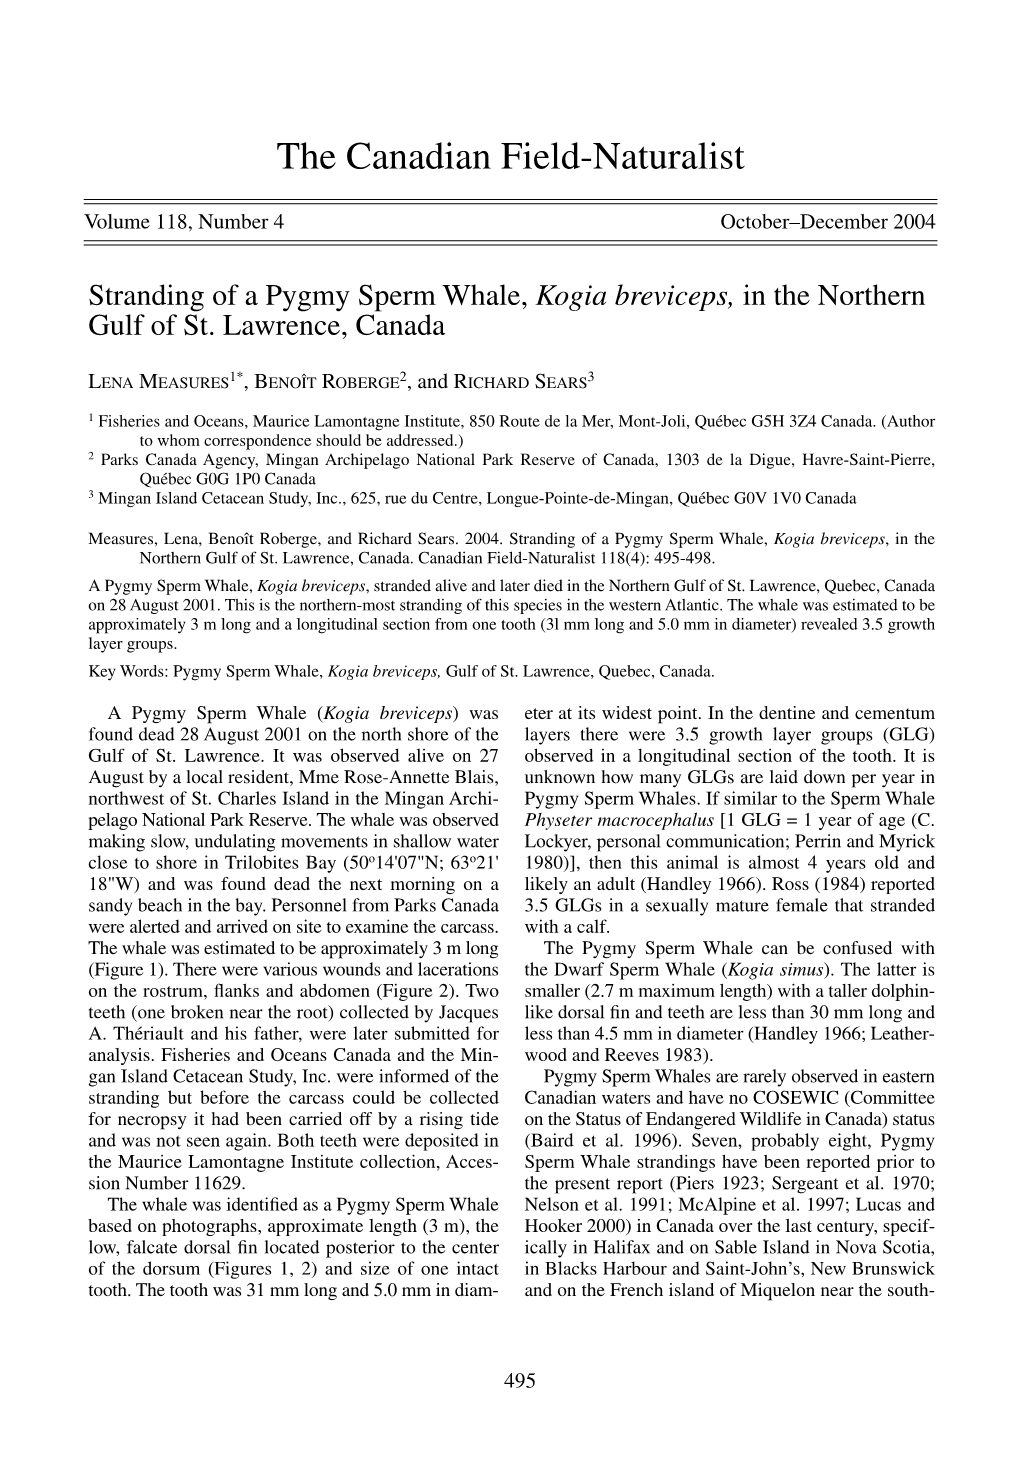 Stranding of a Pygmy Sperm Whale (Kogia Breviceps)